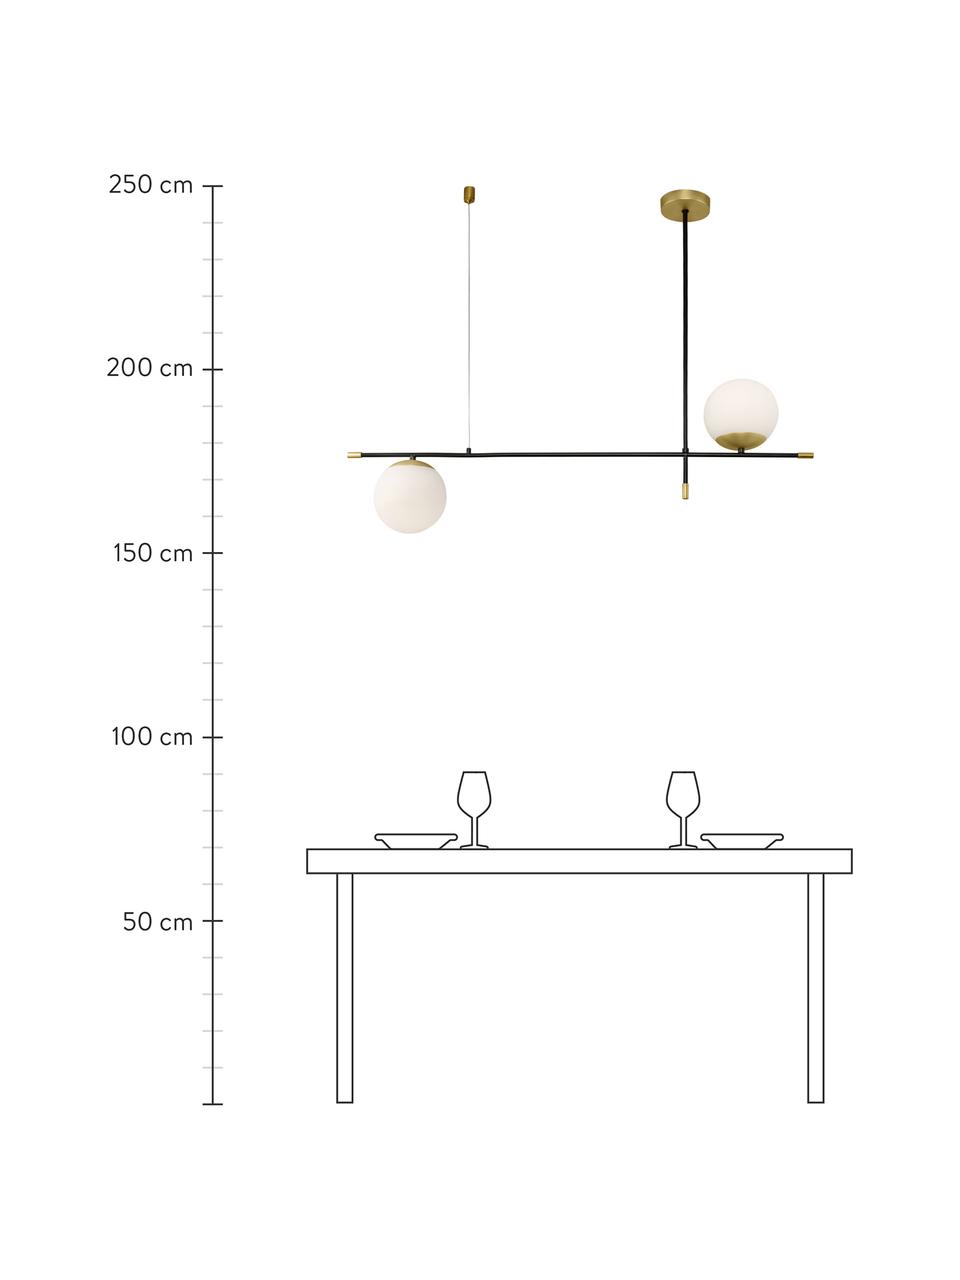 Grote design hanglamp Nostalgia, Lampenkap: melkglas, Baldakijn: gecoat metaal, Decoratie: gecoat metaal, Zwart, melkwit, goudkleurig, B 95 x H 76 cm